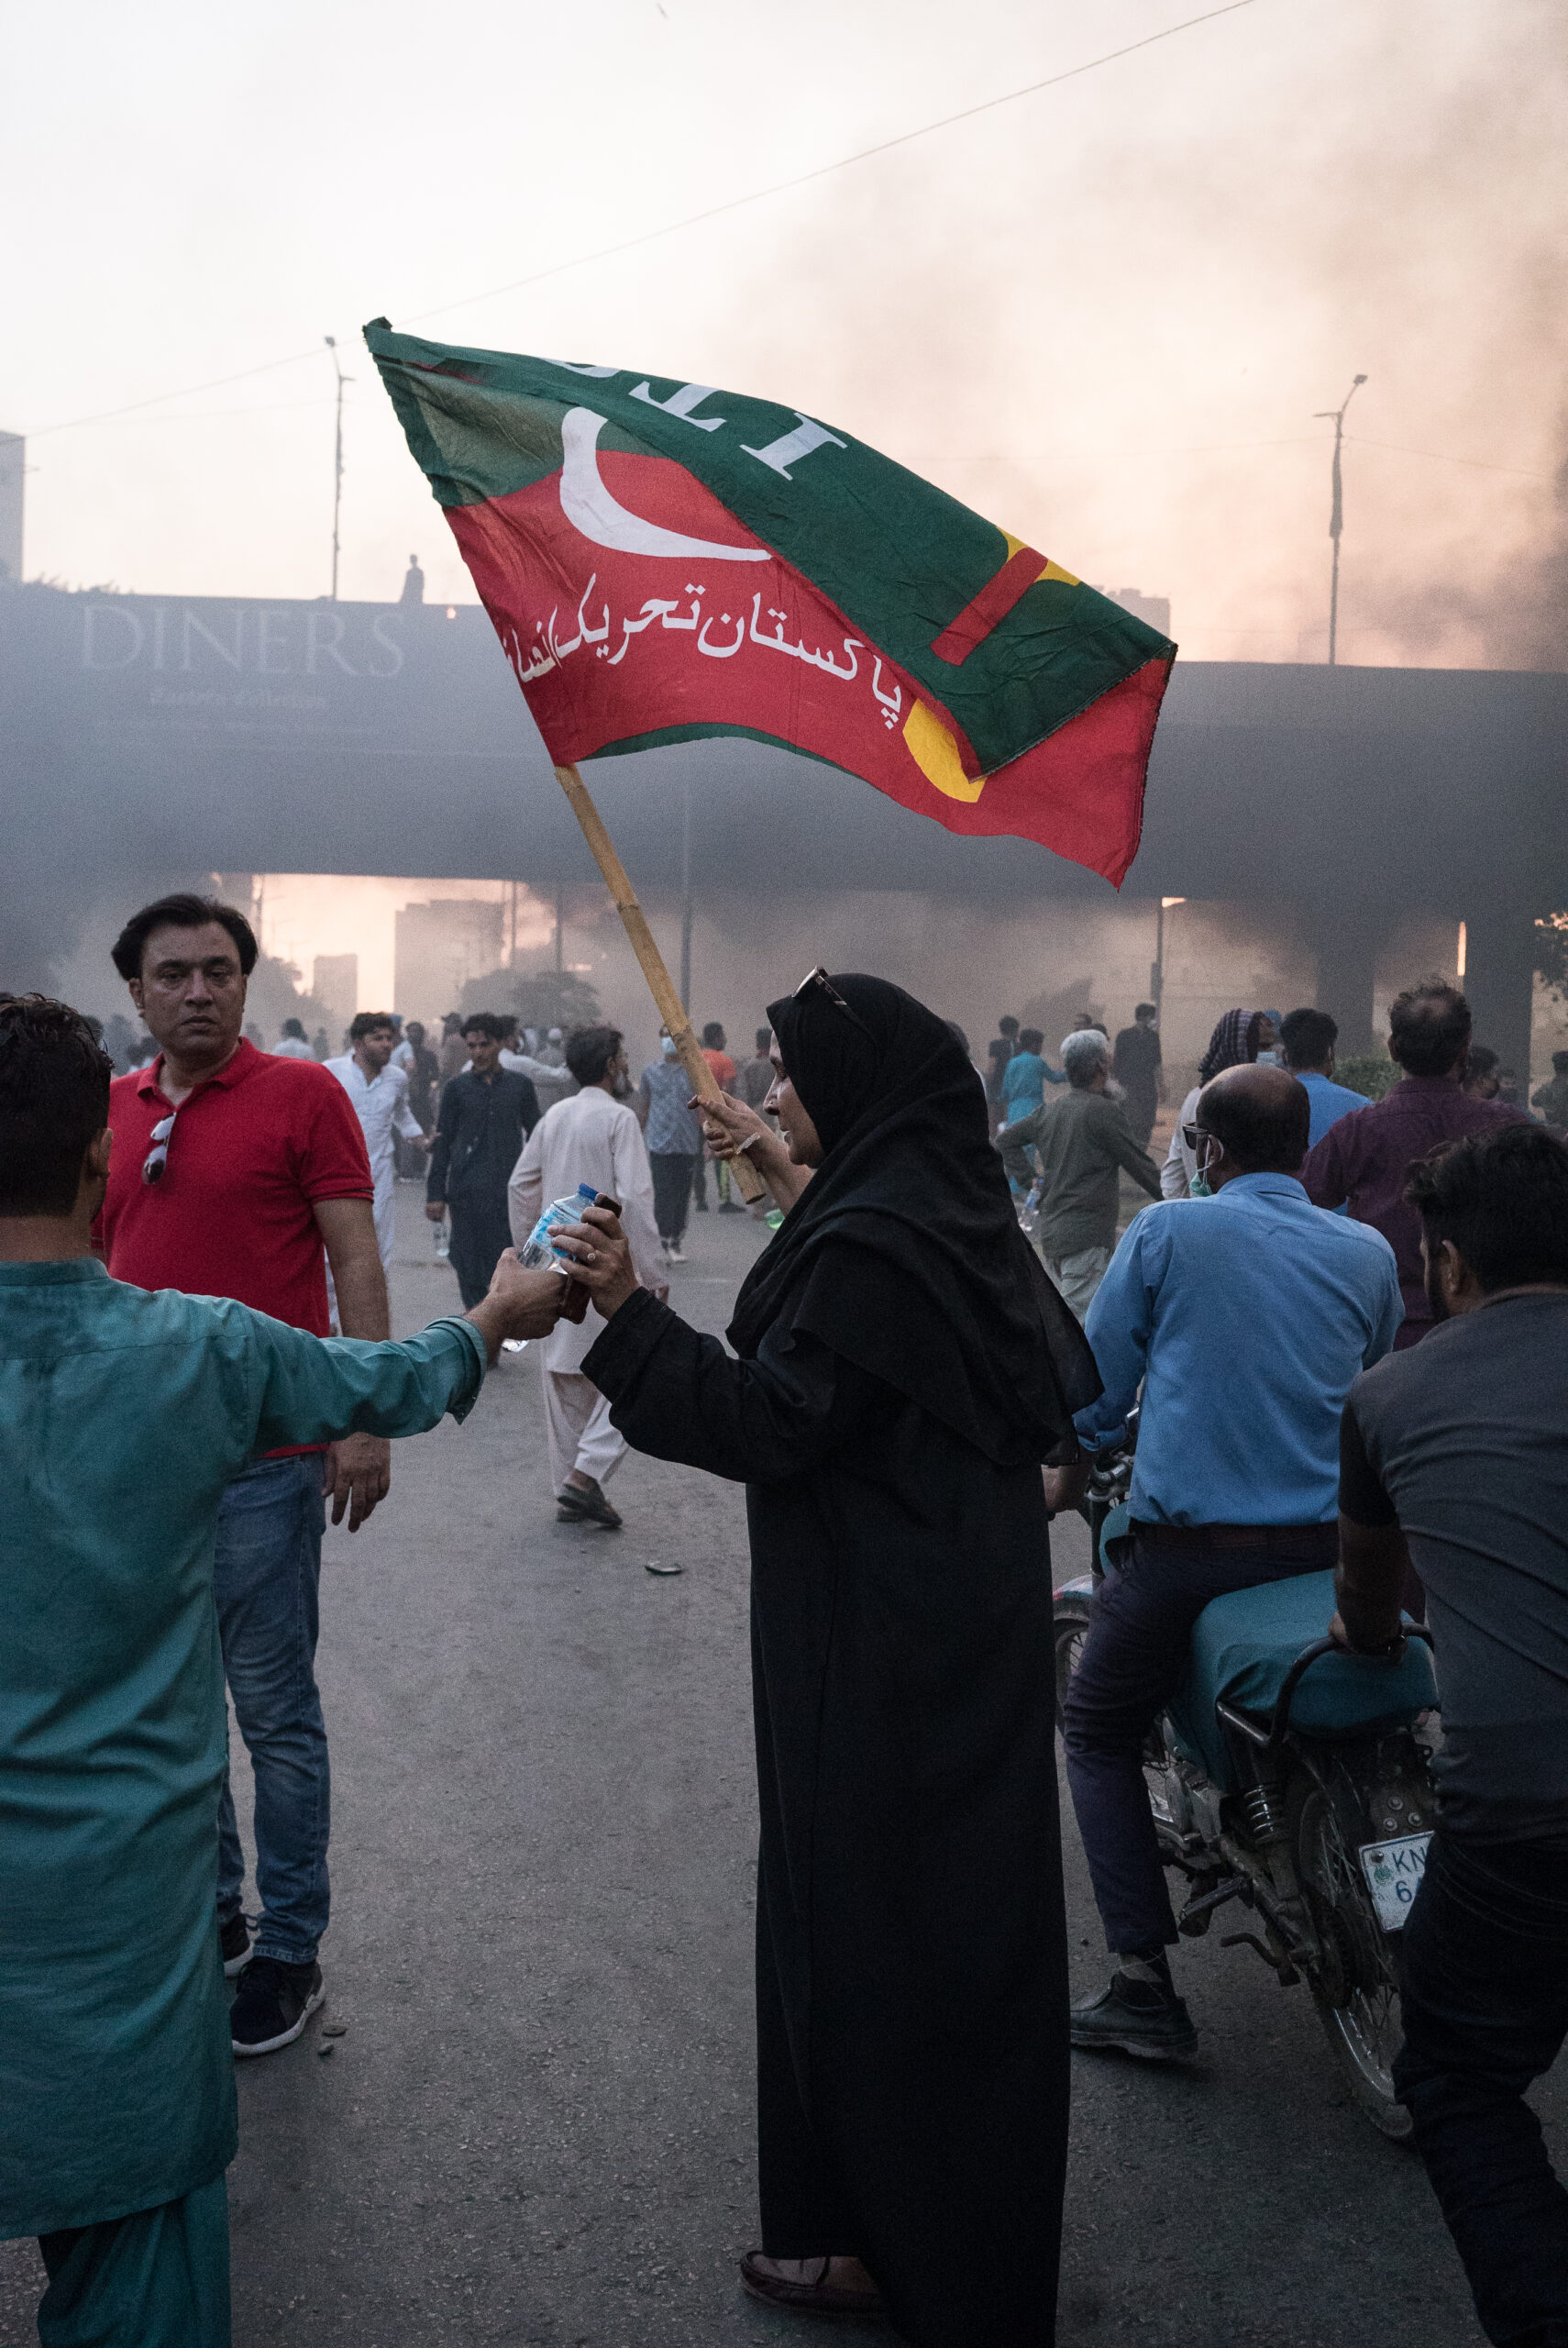 Simpatizante del PTI en la manifestación del 9 de mayo, Karachi. © Laurent Gayer